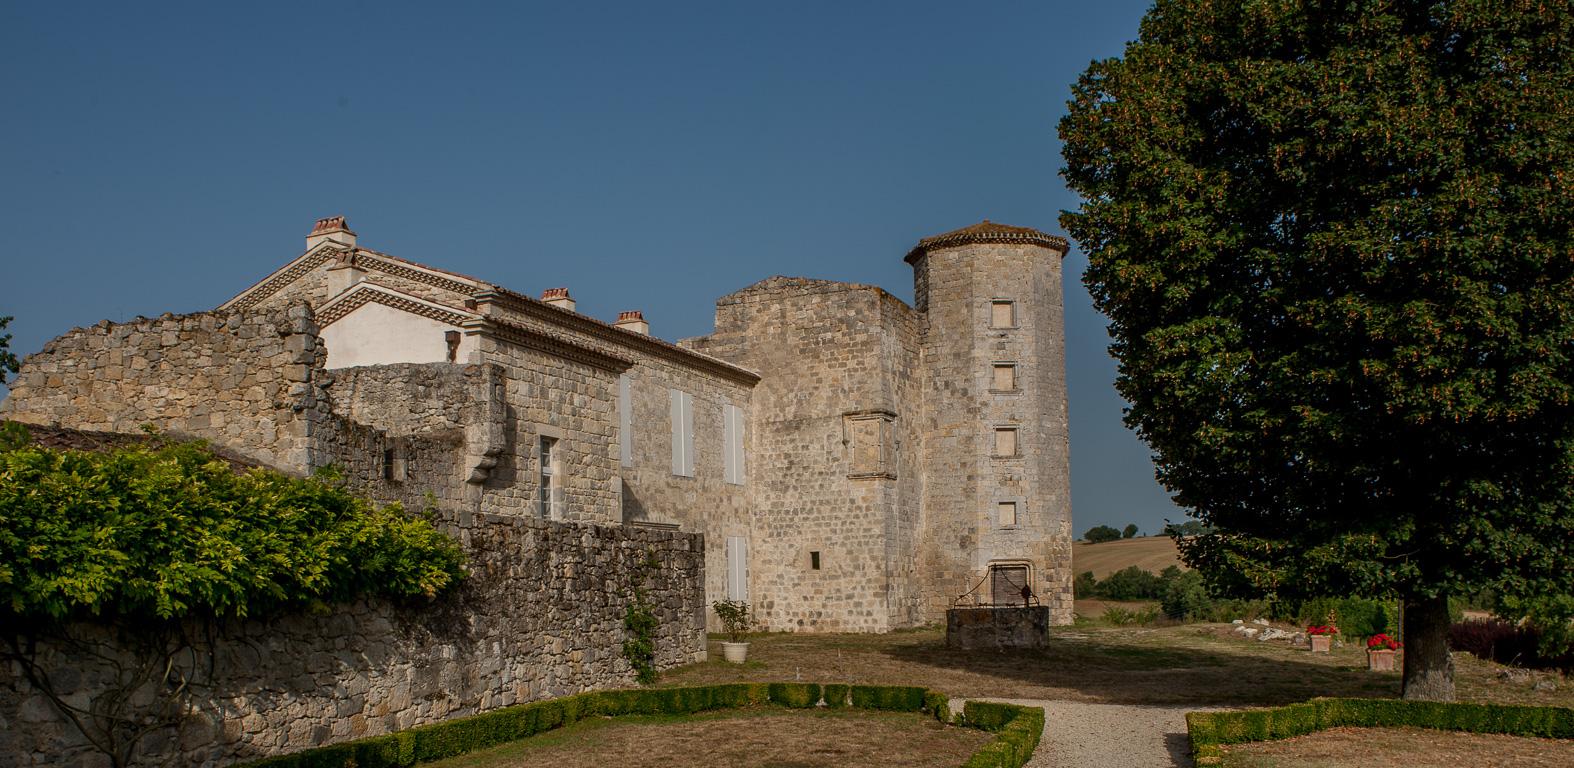 Château Maison forte du XV ème siècle